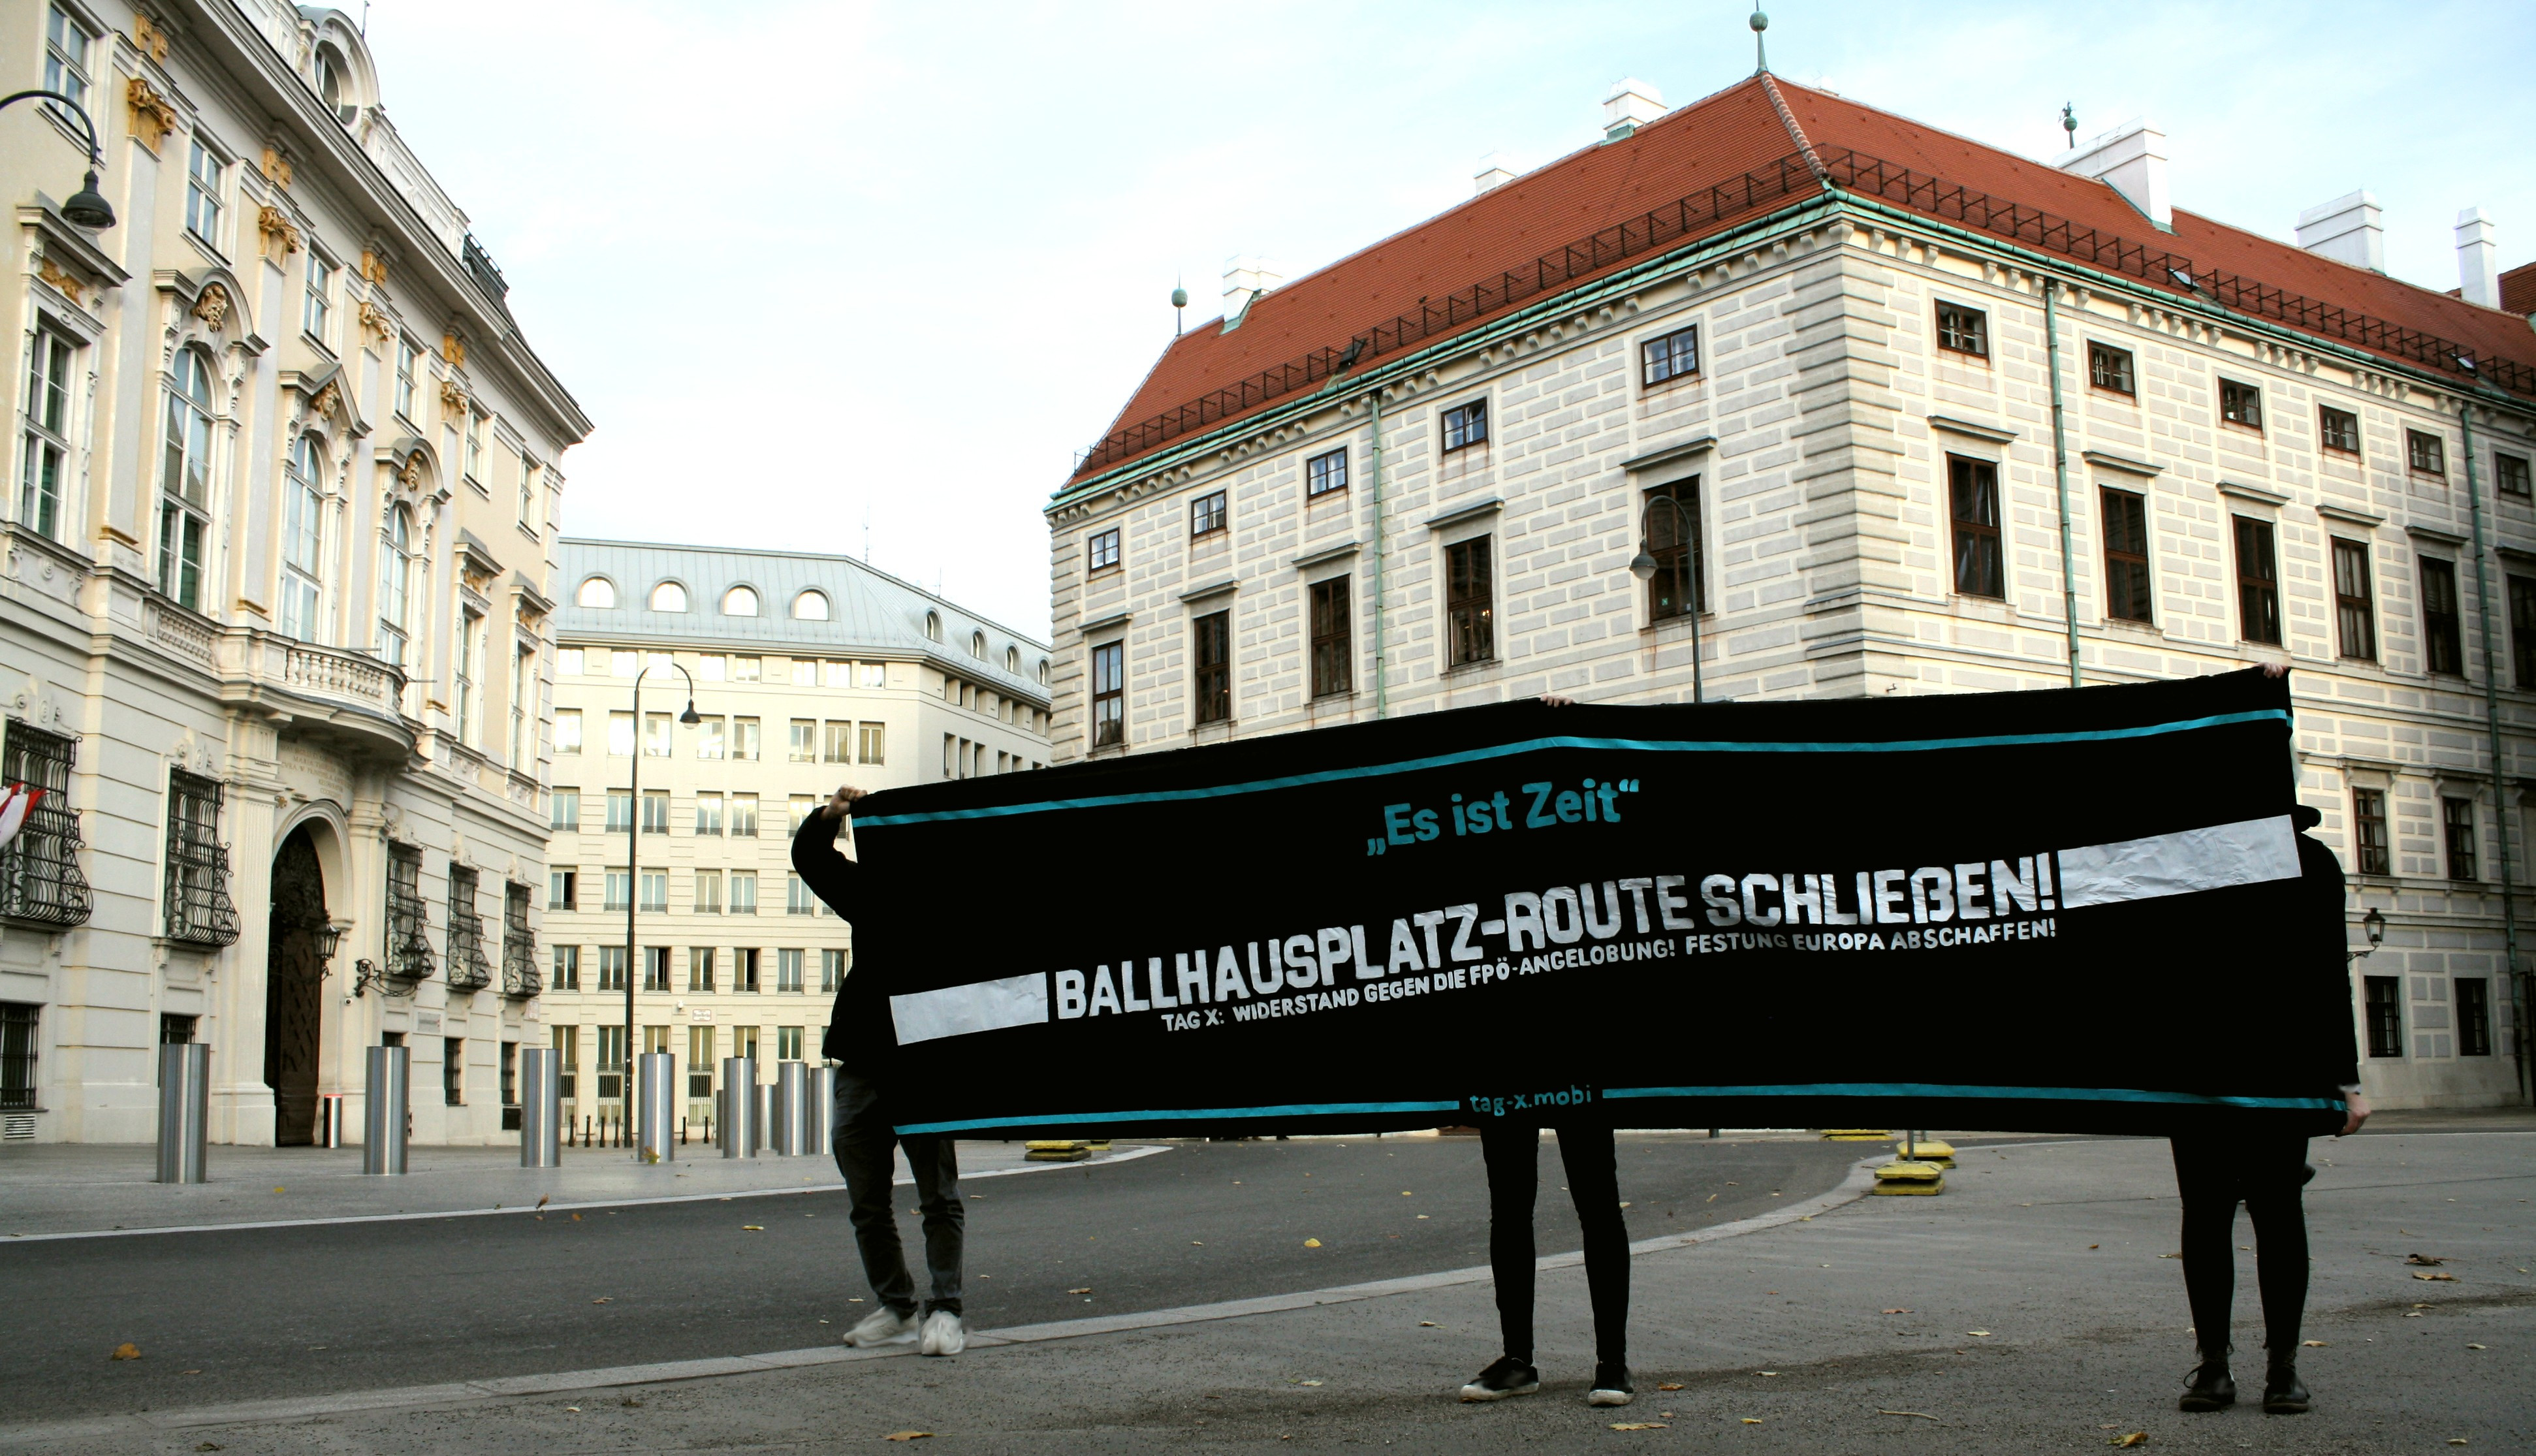 Ballhausplatz Route schließen